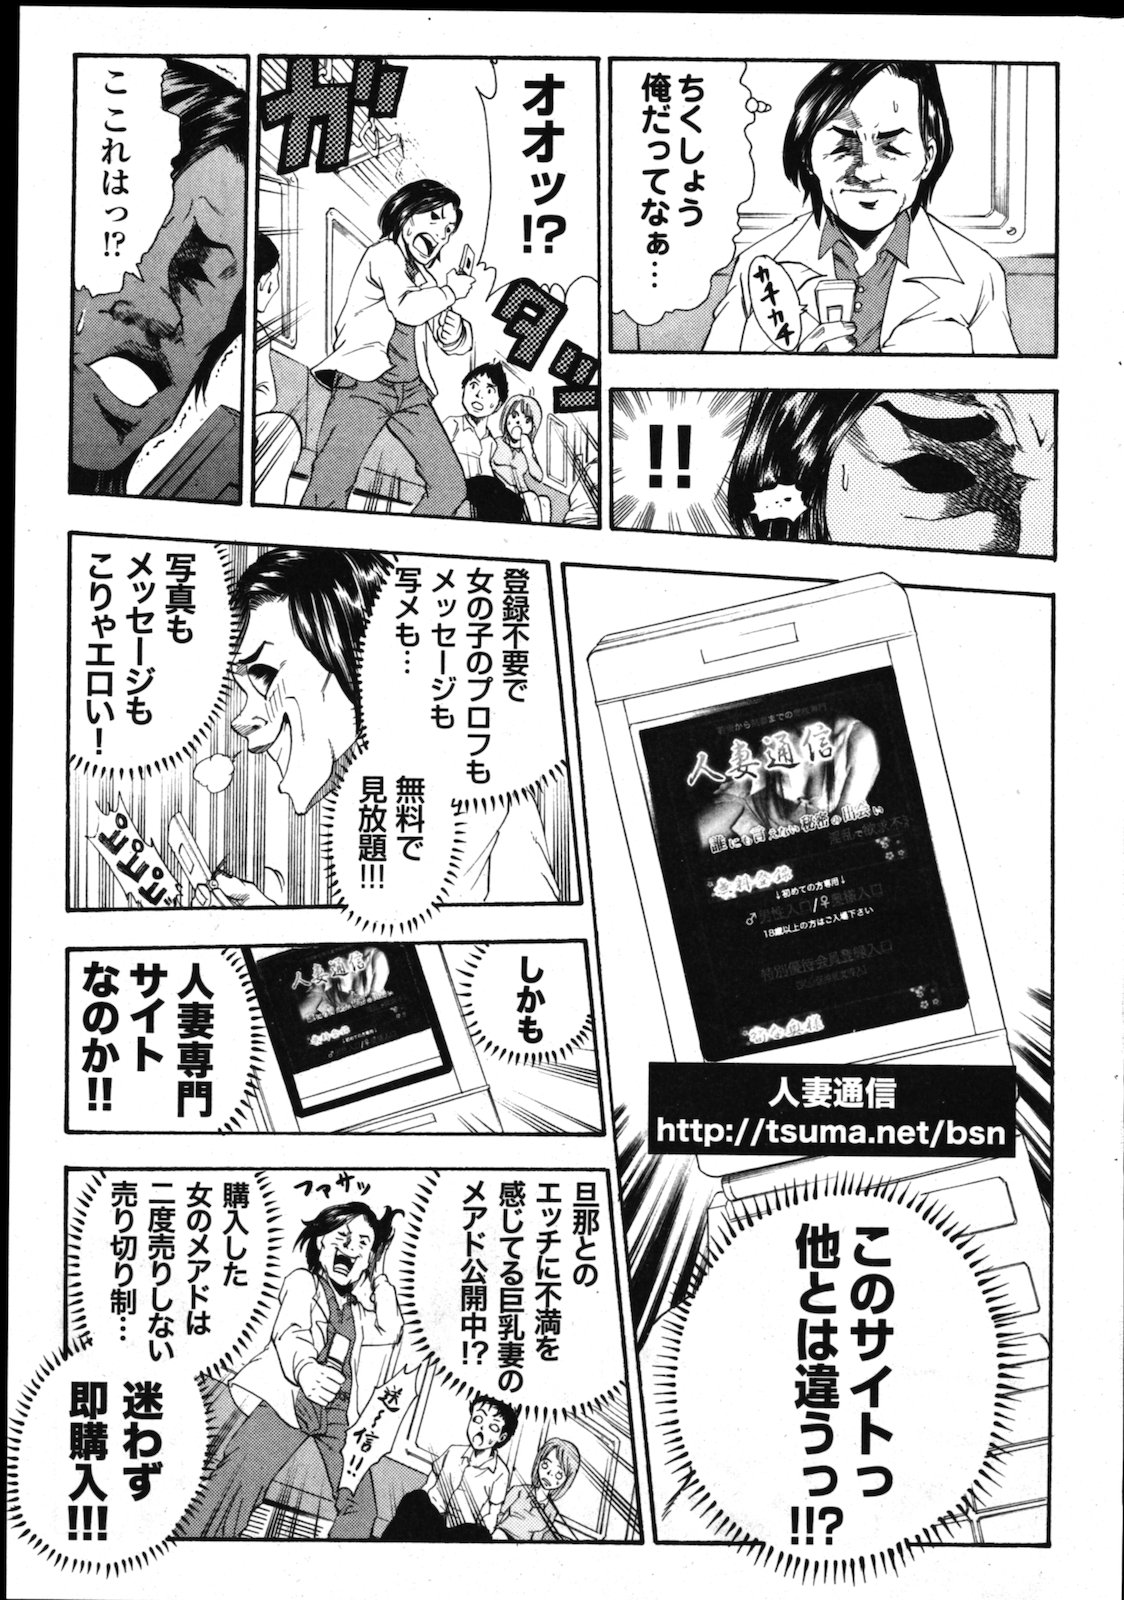 [雑誌] COMIC 失楽天 Vol.01 COMIC 快楽天 2011年07月号増刊